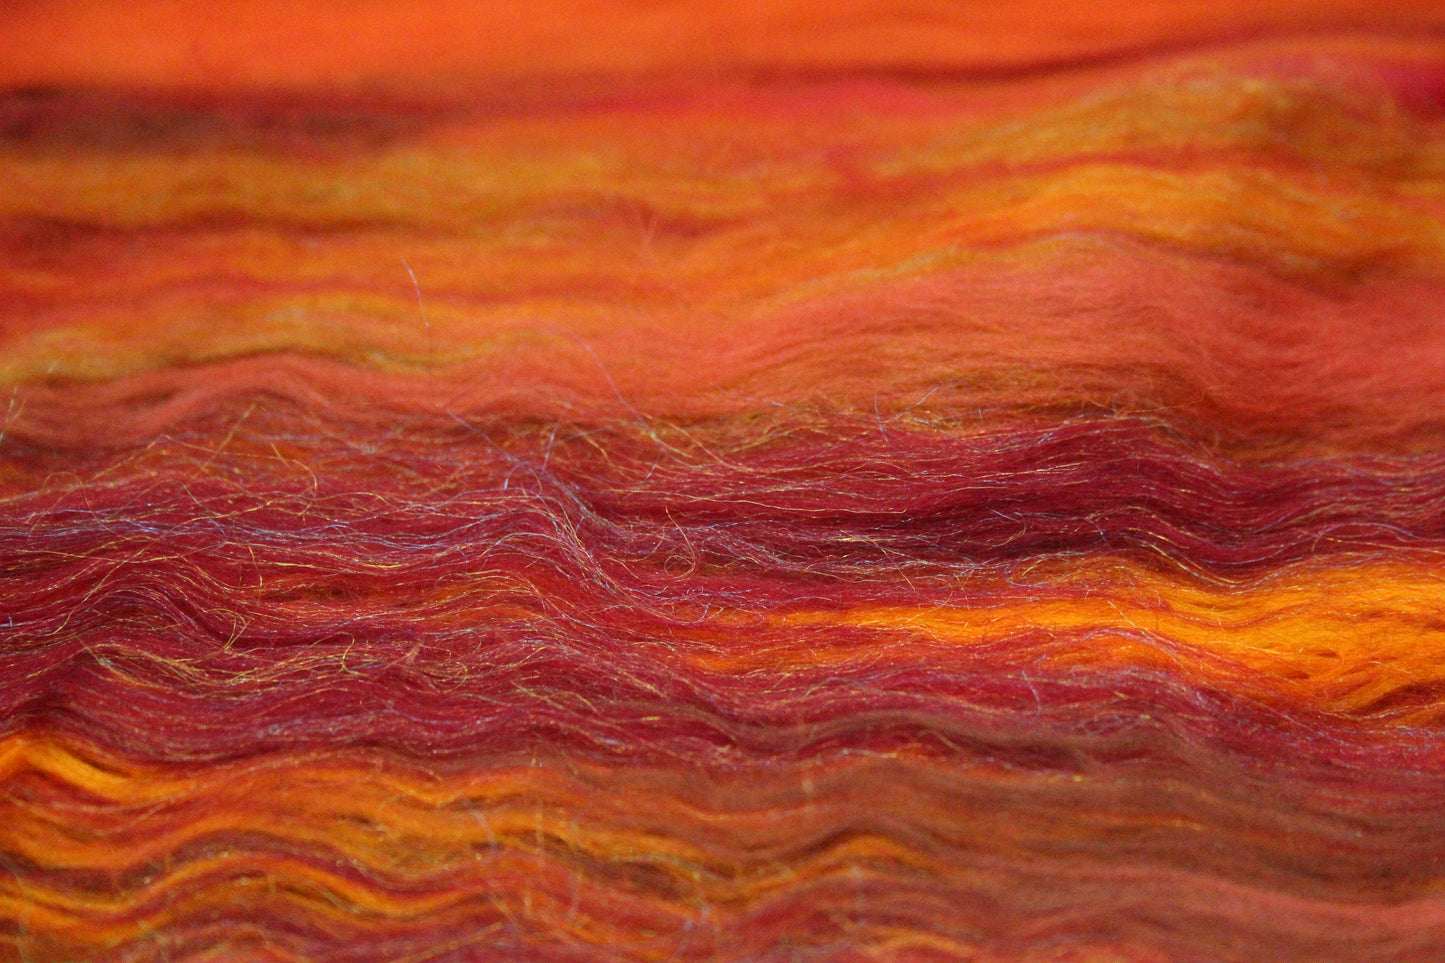 Merino Art Batt  - Red Orange Brown  - 152 grams 5.3 oz - Wool for felting, spinning and weaving